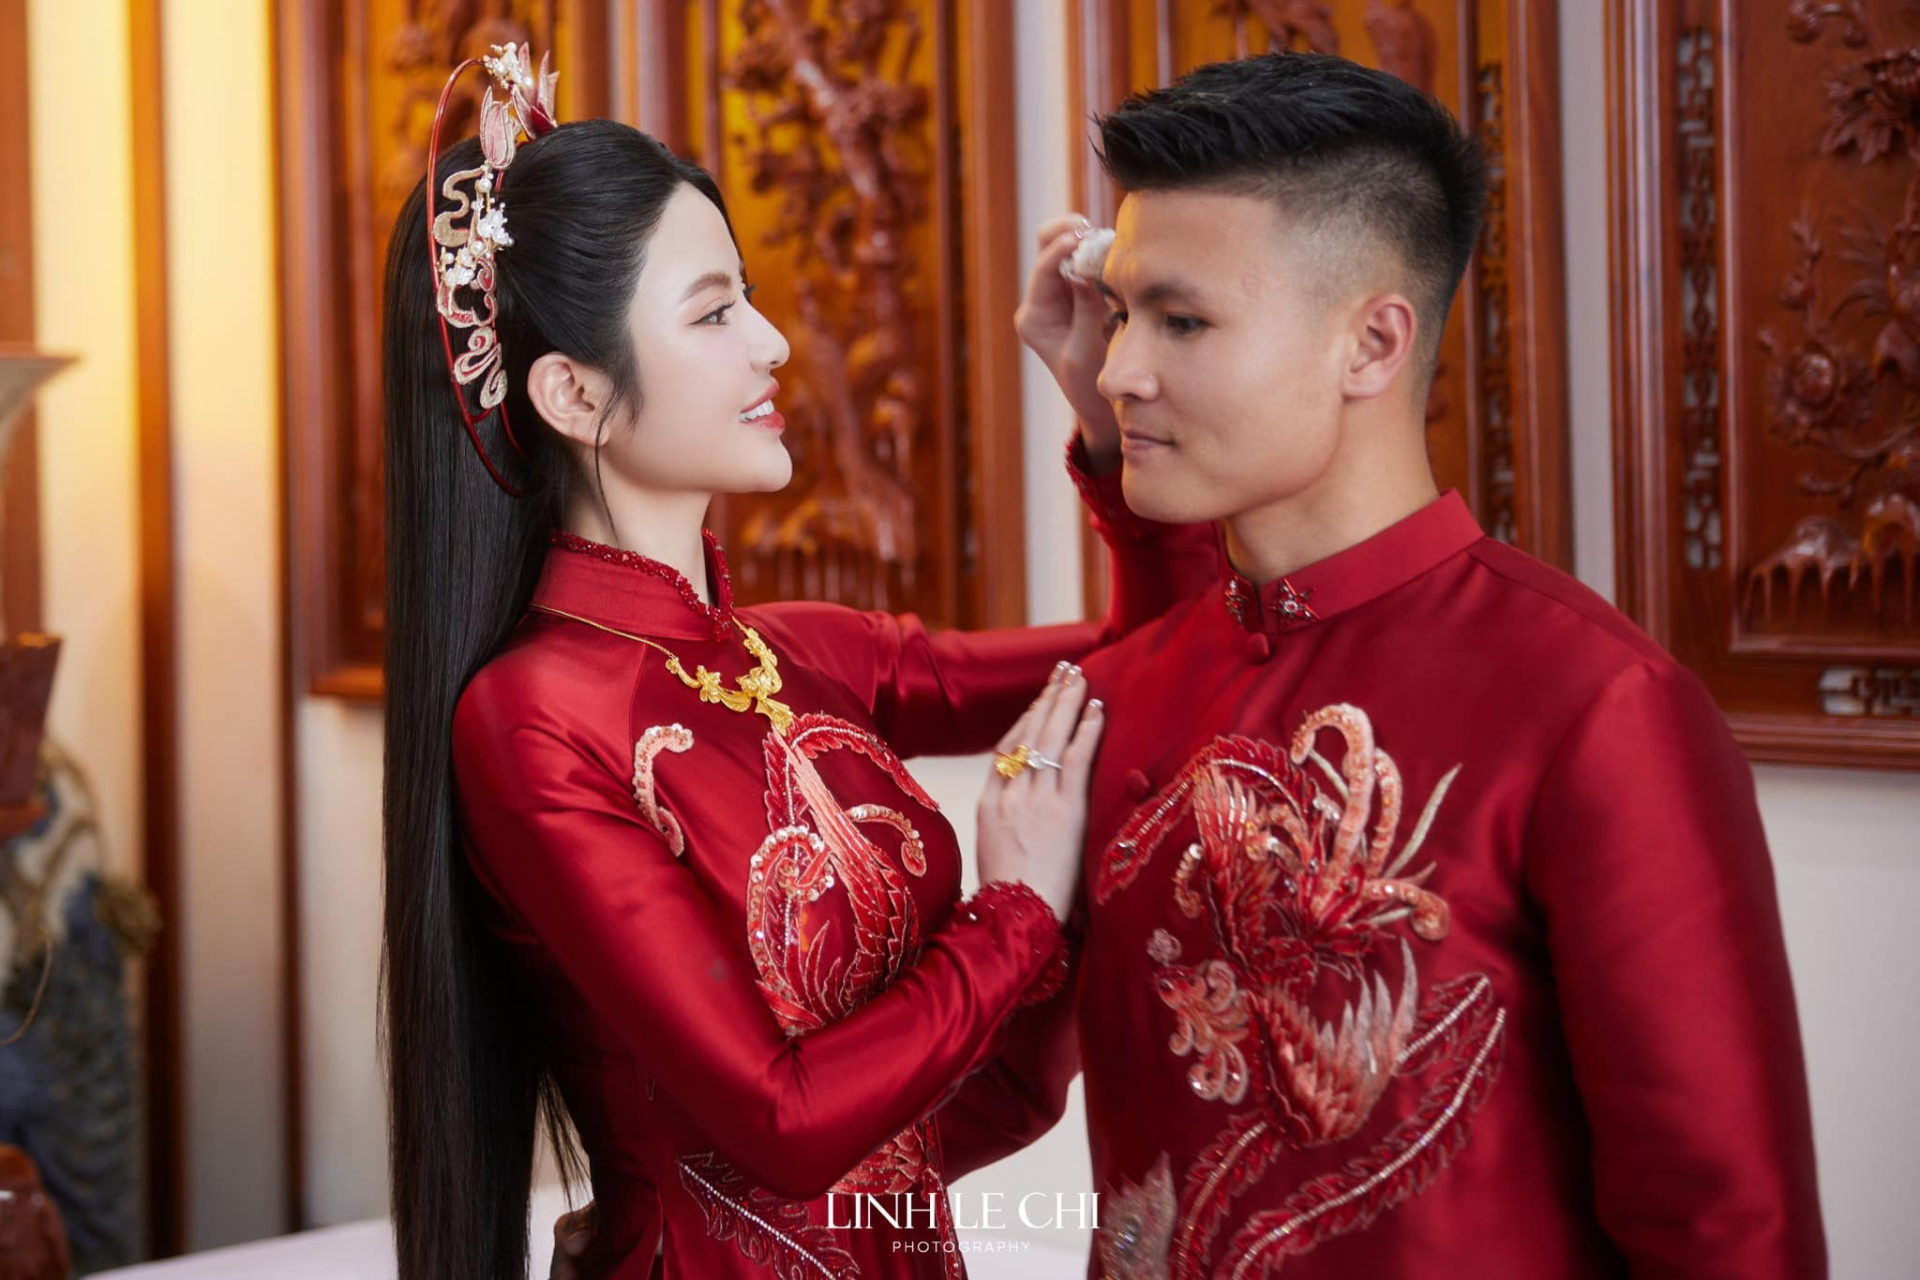 Quang Hải khoe đi đăng ký kết hôn với Chu Thanh Huyền, dàn cầu thủ vào “cảnh báo” chuyện lấy vợ cực hài hước - ảnh 3